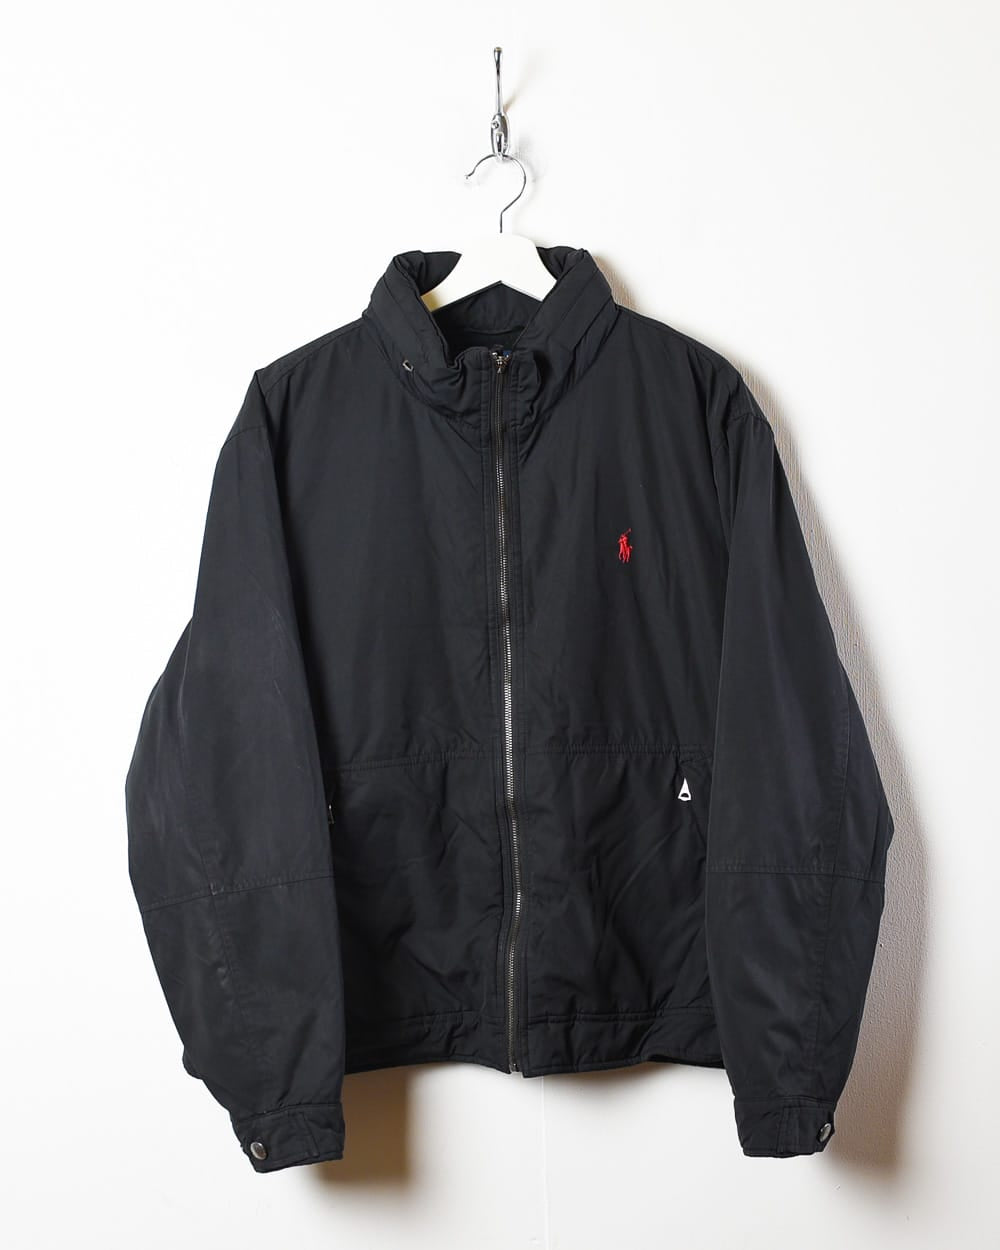 Black Polo Ralph Lauren Fleece Lined Jacket - Medium